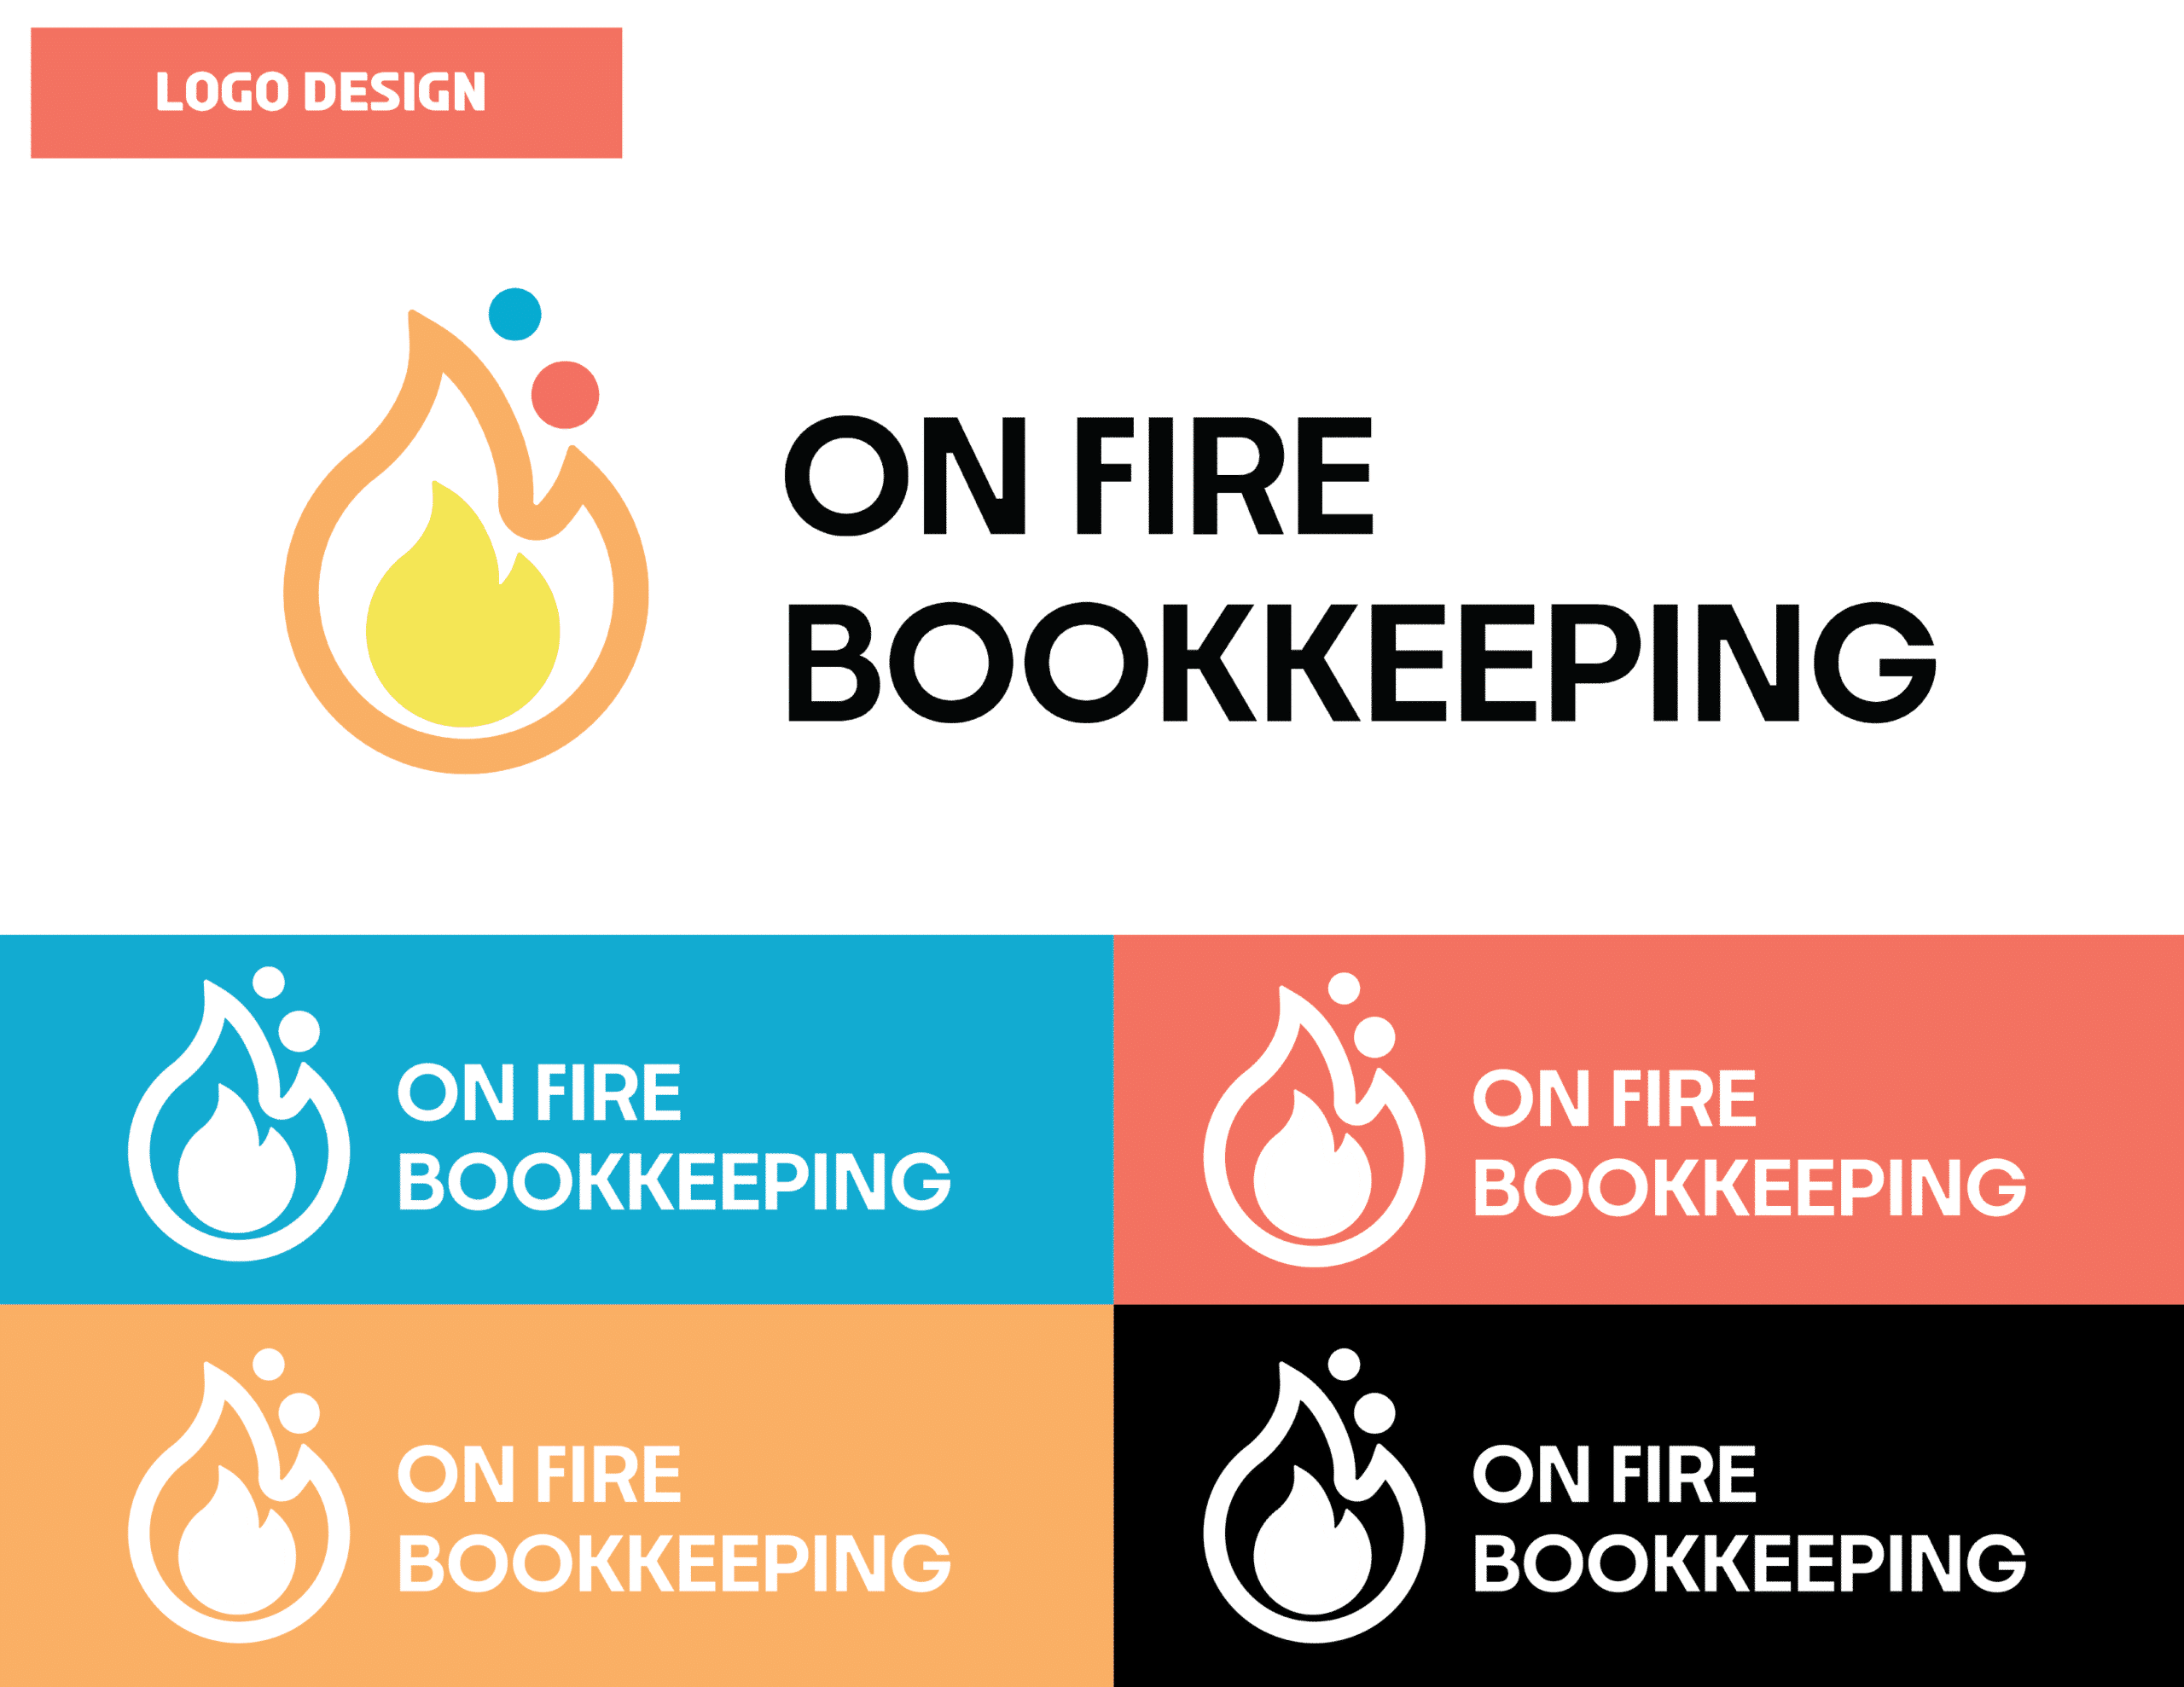 01_OnFireBookkeeping_Logo Design